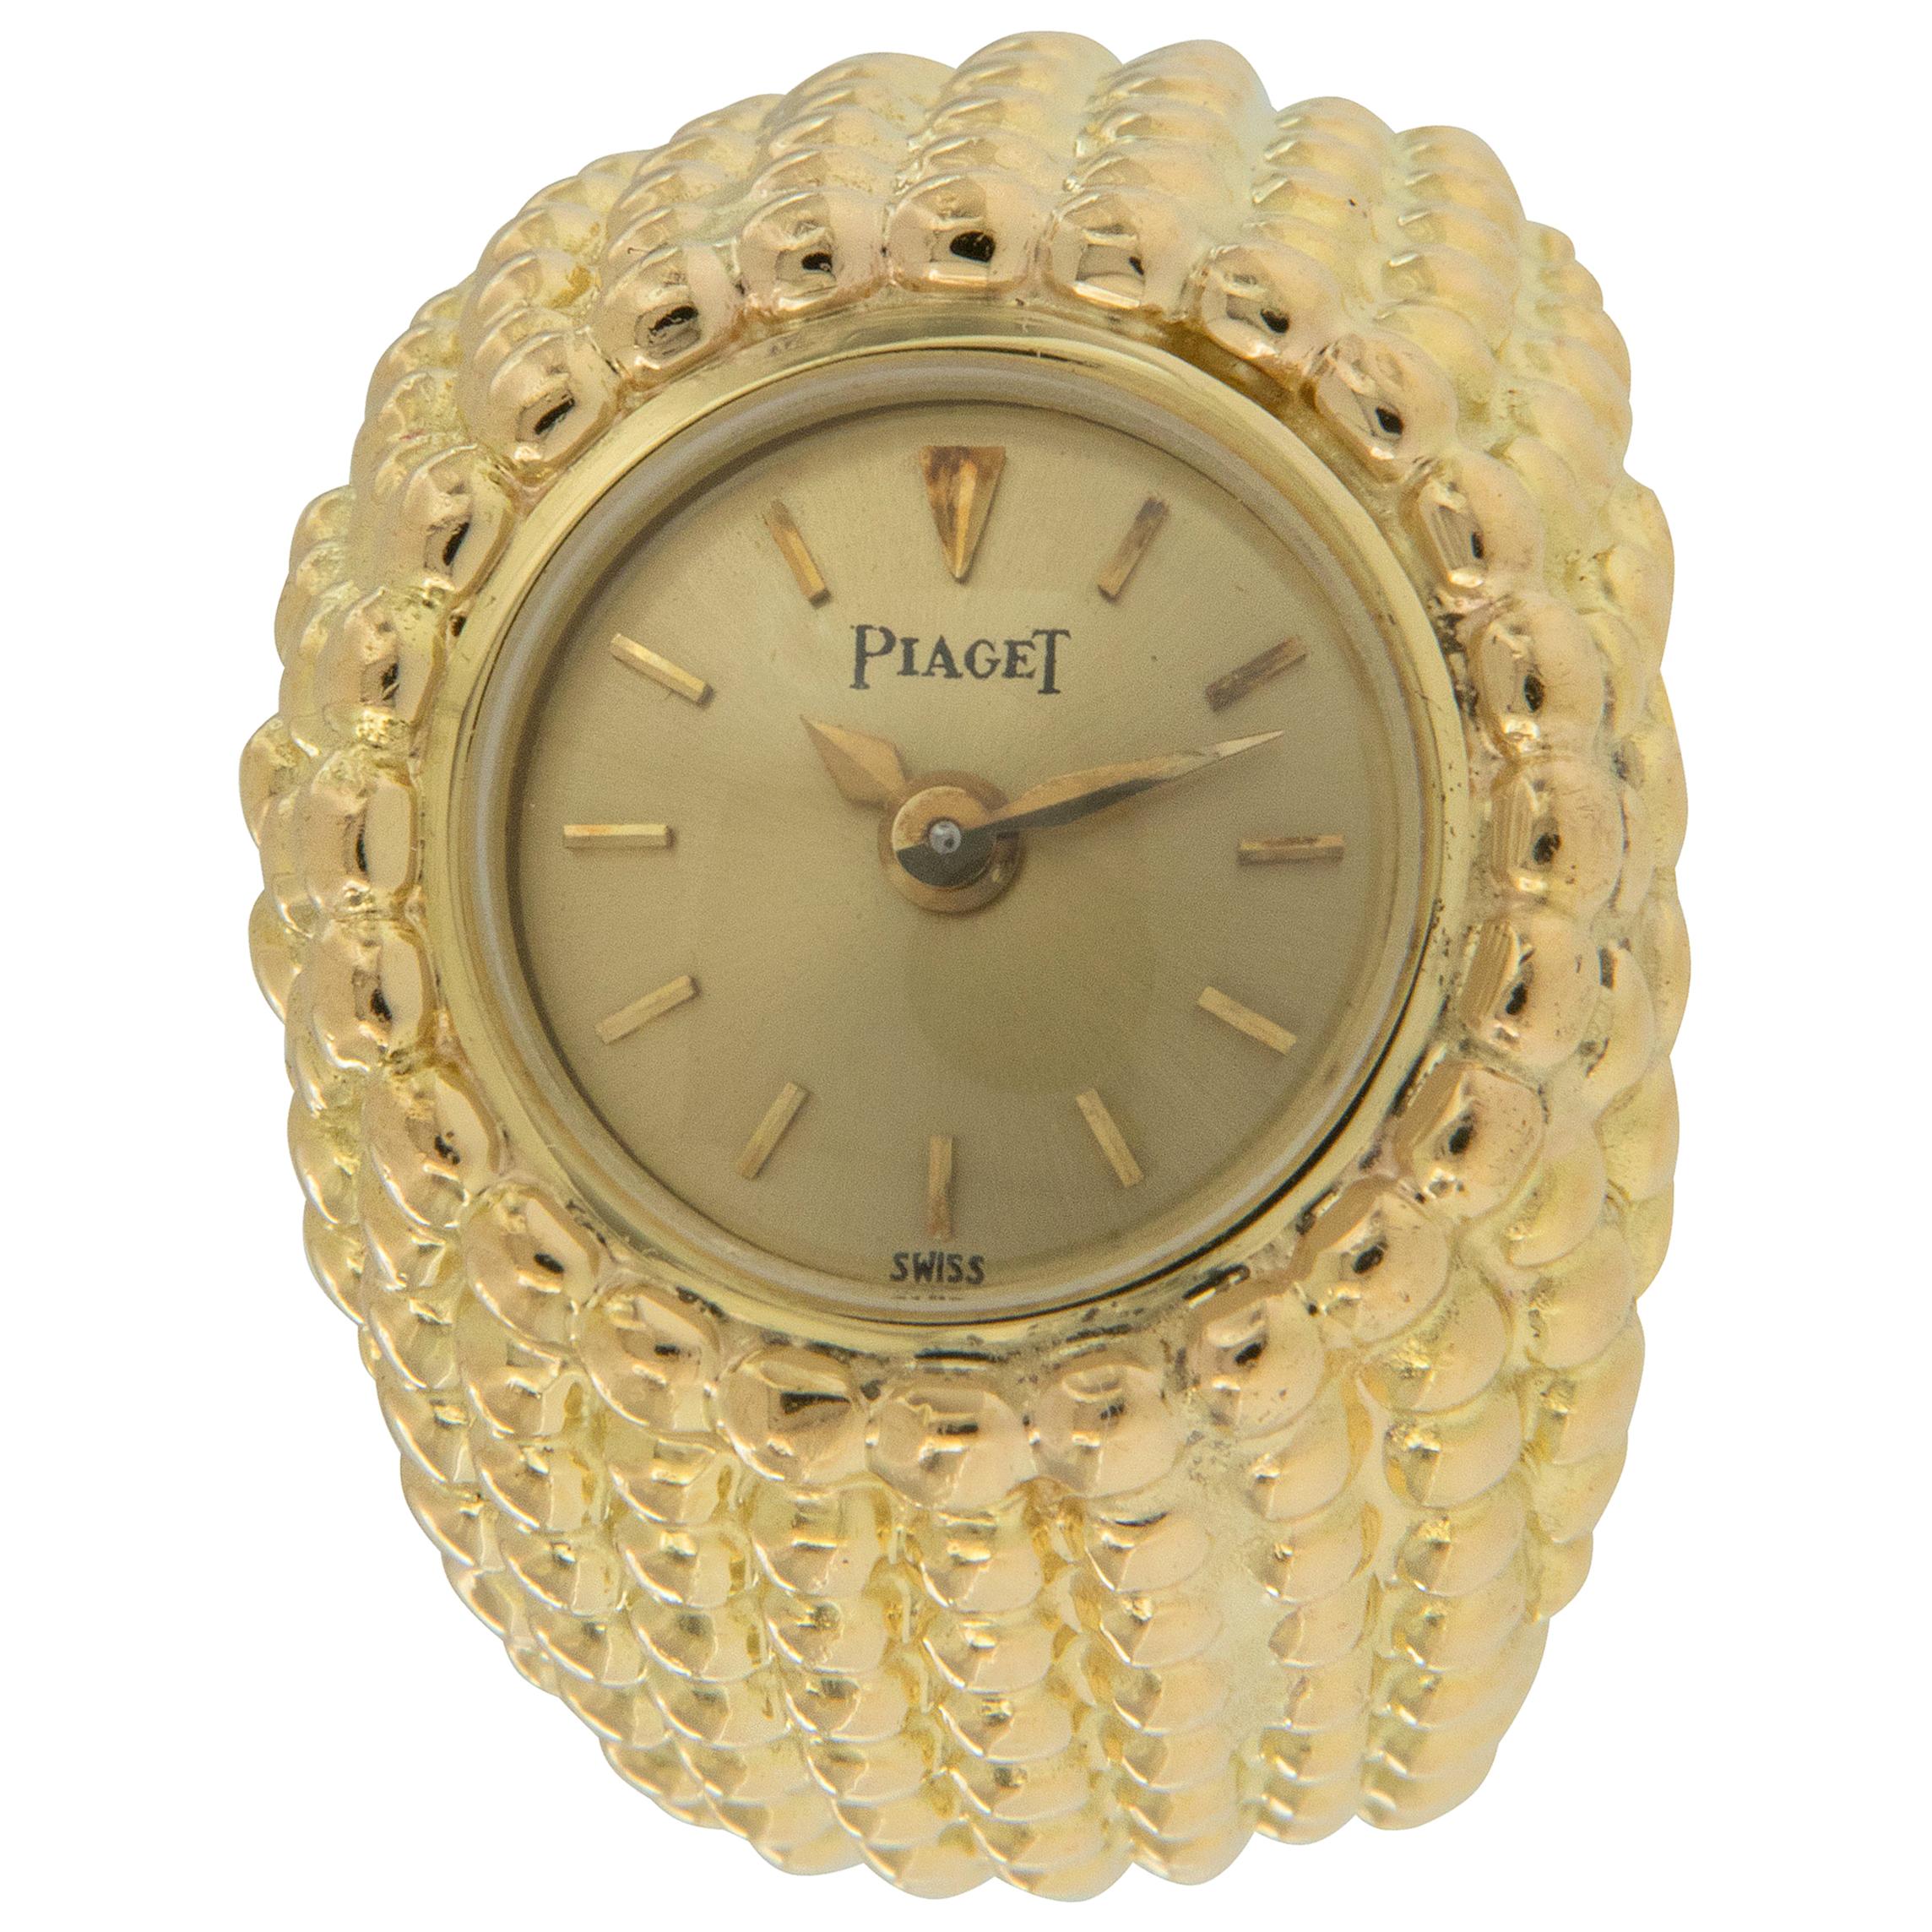 Rarely Seen 18 Karat Yellow Gold Piaget Ring Watch